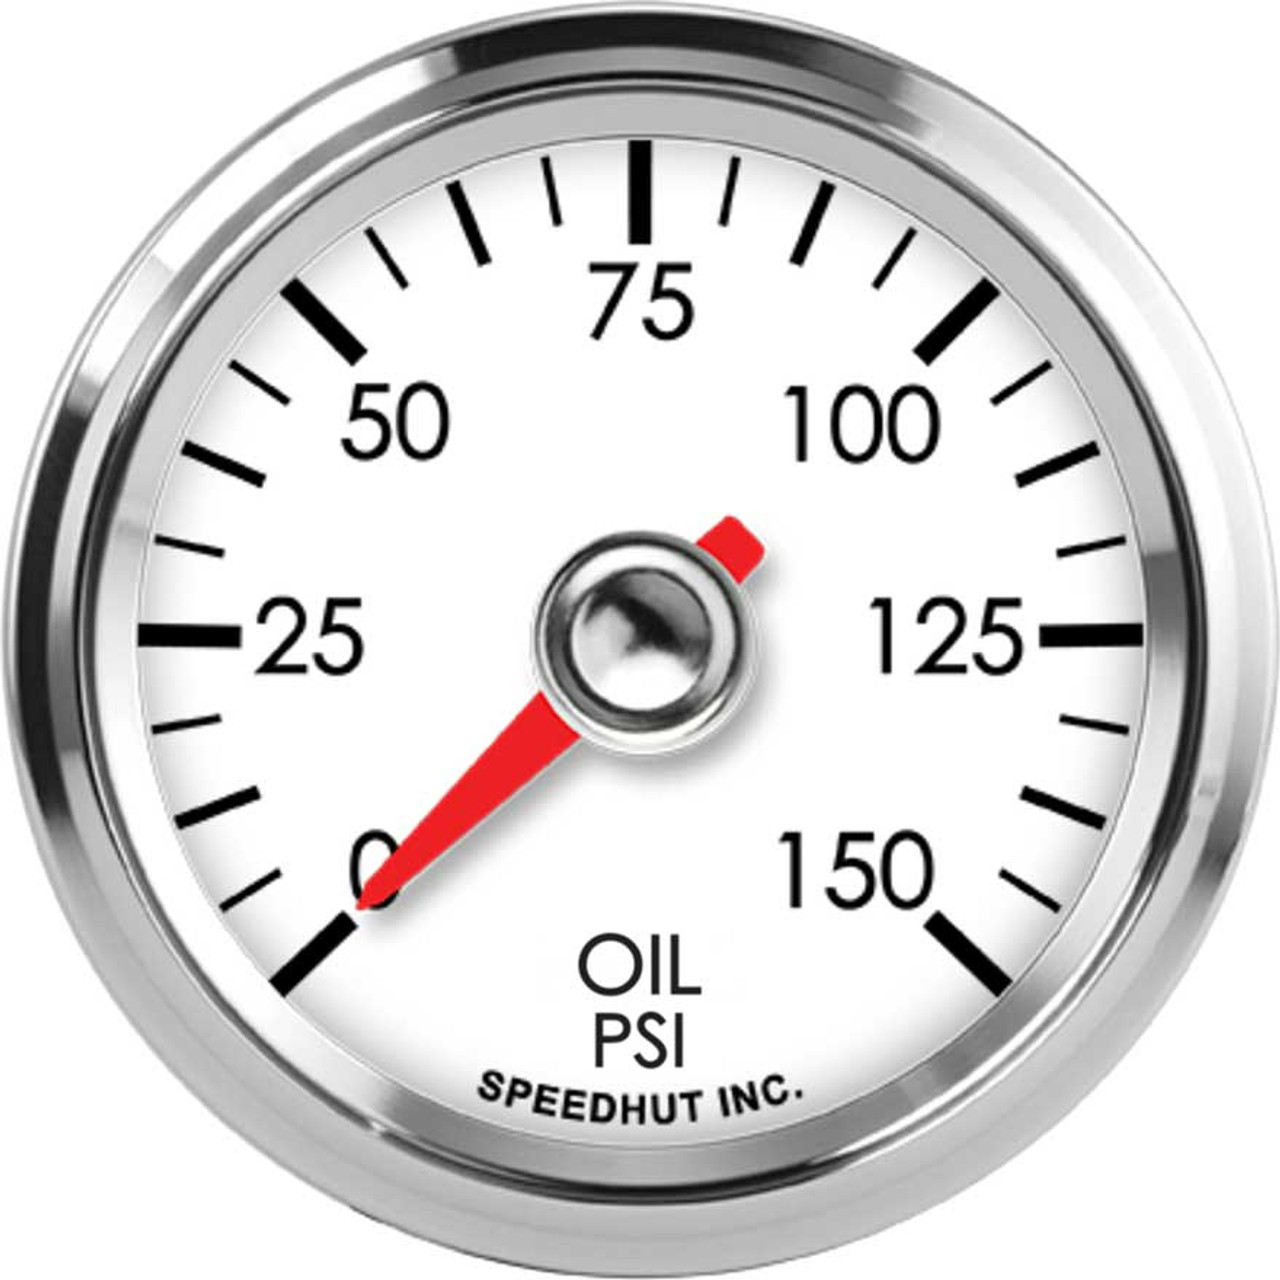 2-1/16" Classic Oil Pressure Gauge 0-150 psi